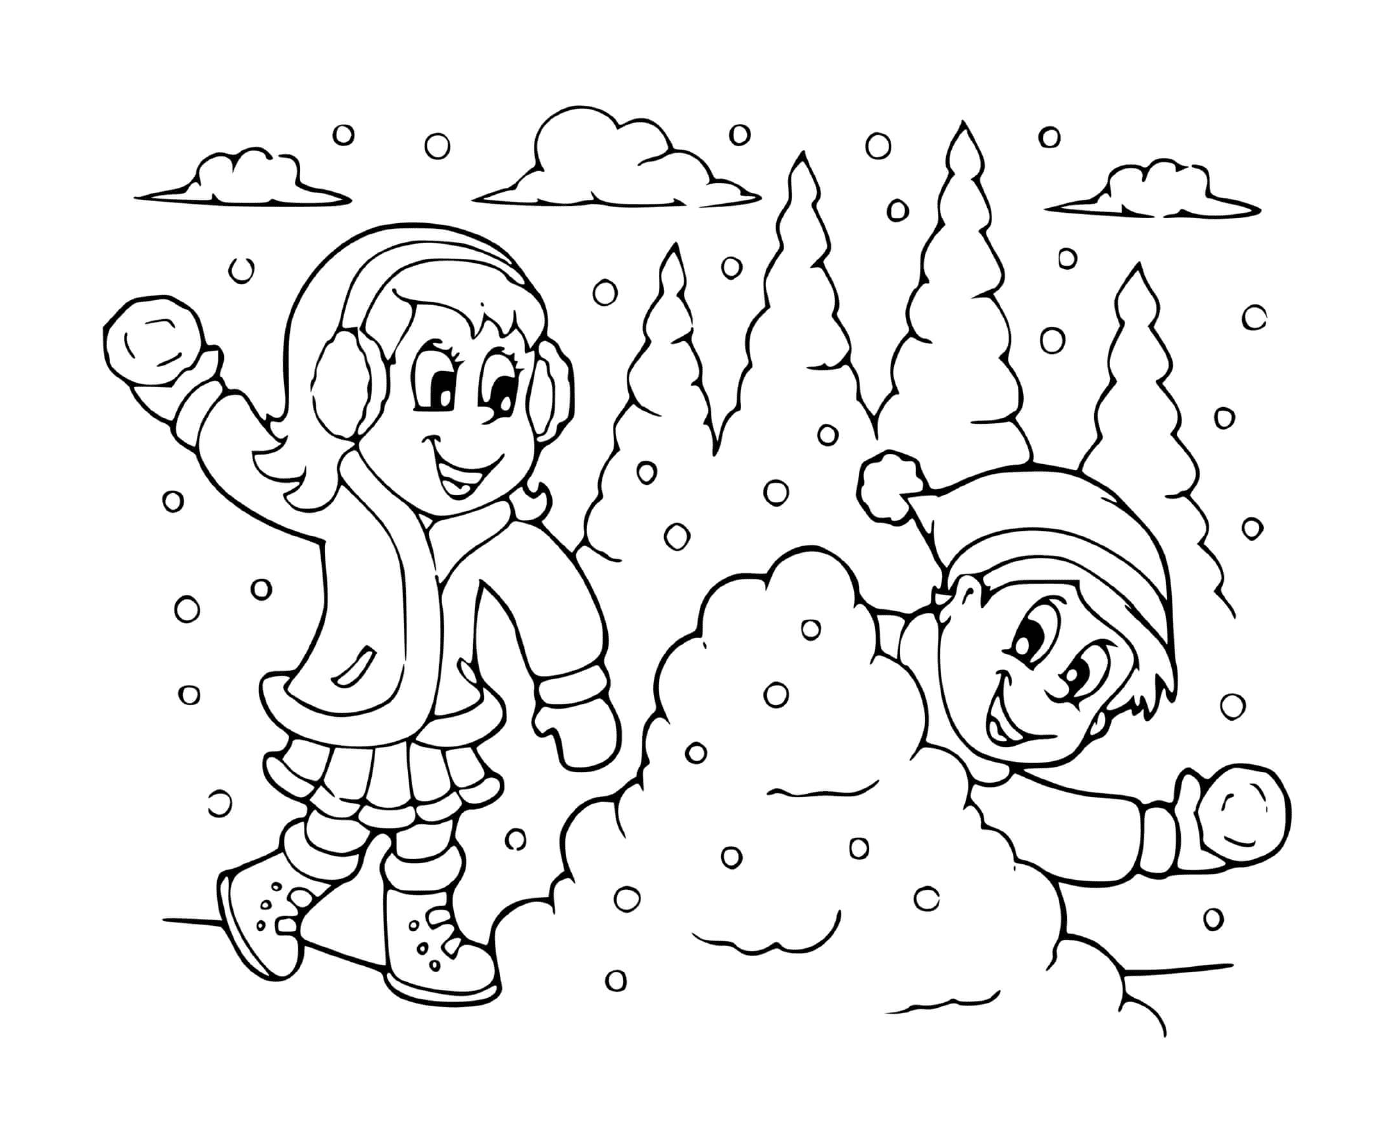  女孩和男孩之间的雪战 